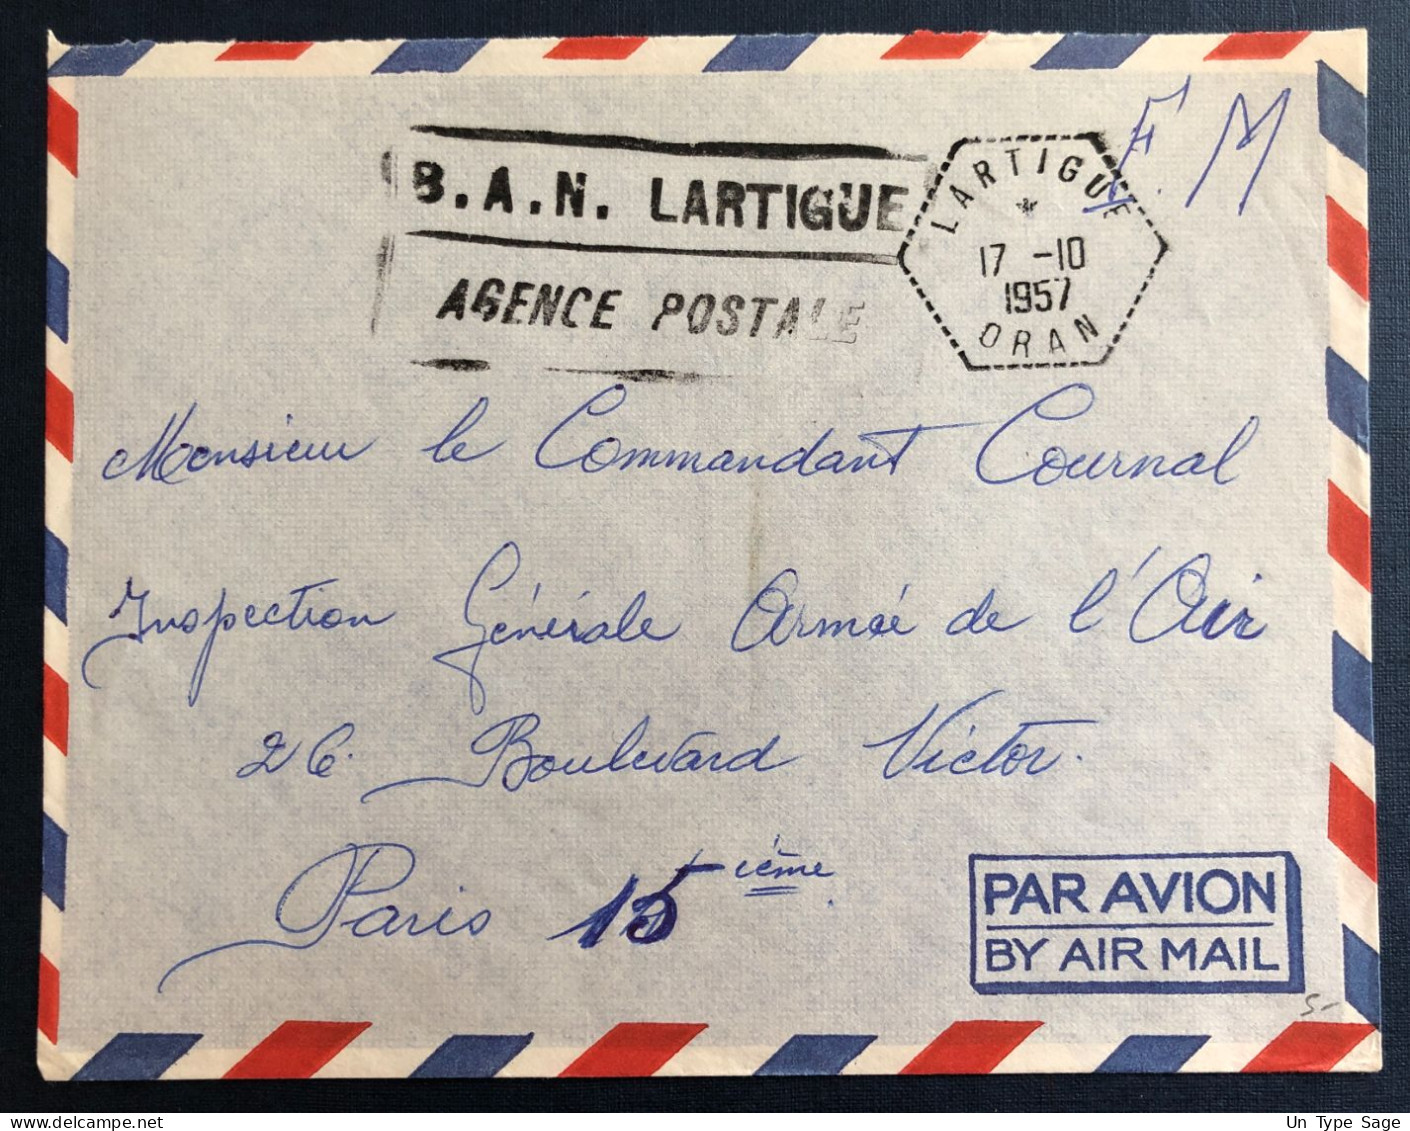 Algérie, Sur Enveloppe TAD Lartigue, Oran 17.10.1957 + Griffe B.A.N. LARTIGUE / AGENCE POSTALE - (B3349) - Briefe U. Dokumente